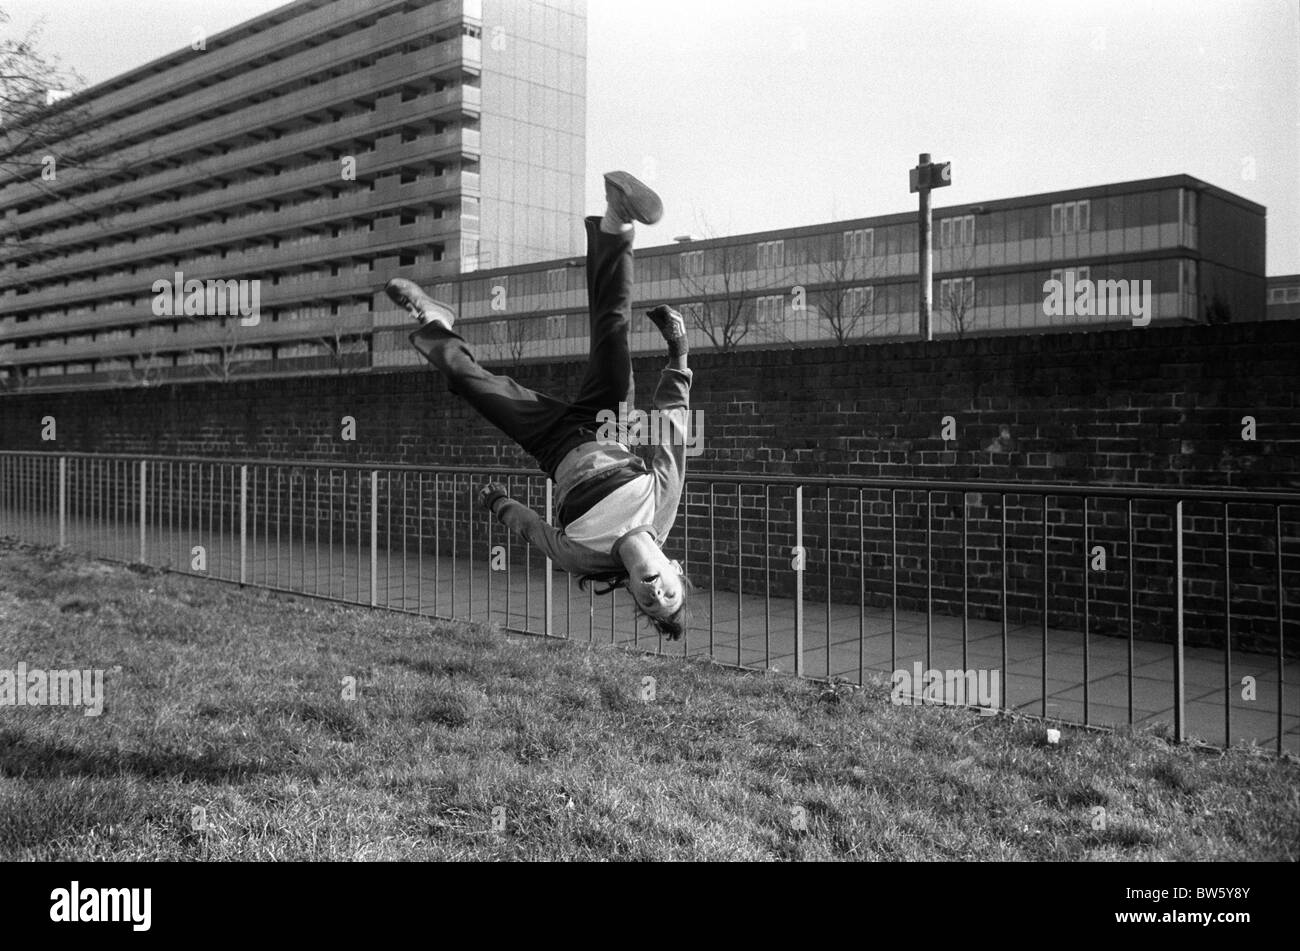 Teenager-Mädchen spielt in Street 1980s UK. Sie übt Gymnastik und macht einen Somersault. Heygate Estate, Walworth South London 1983 HOMER SYKES Stockfoto